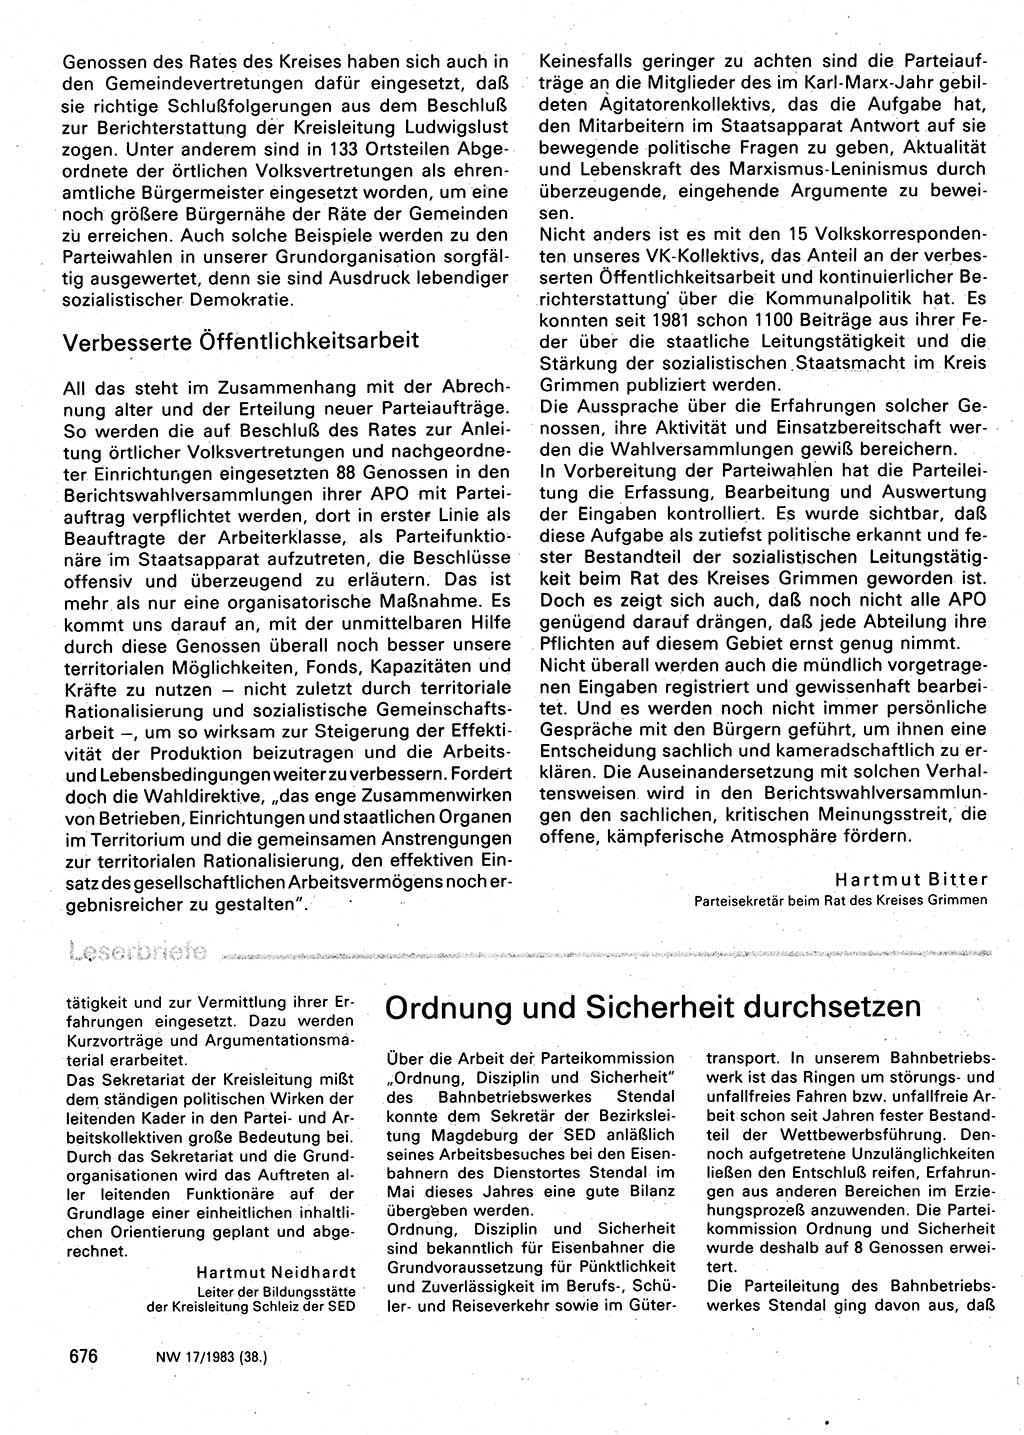 Neuer Weg (NW), Organ des Zentralkomitees (ZK) der SED (Sozialistische Einheitspartei Deutschlands) für Fragen des Parteilebens, 38. Jahrgang [Deutsche Demokratische Republik (DDR)] 1983, Seite 676 (NW ZK SED DDR 1983, S. 676)